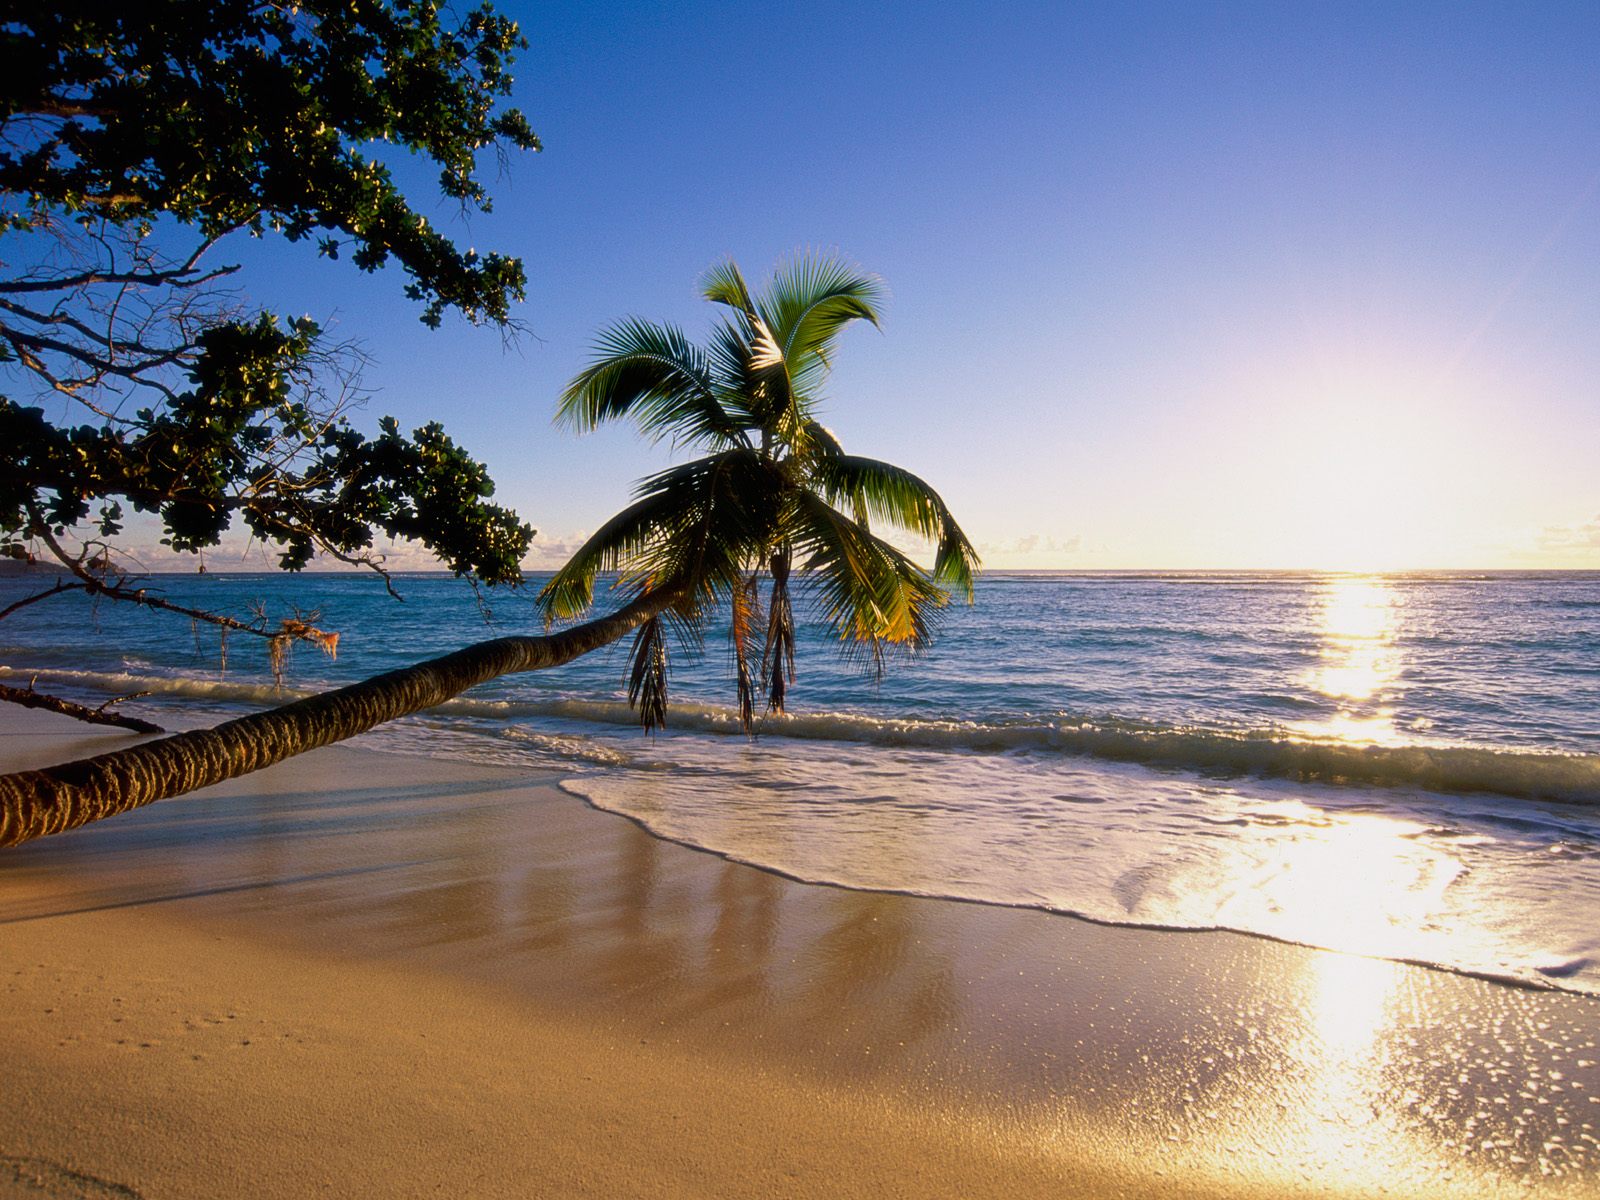 1075774 Заставки и Обои Пляж на телефон. Скачать земля/природа, песок, океан, пальмы картинки бесплатно